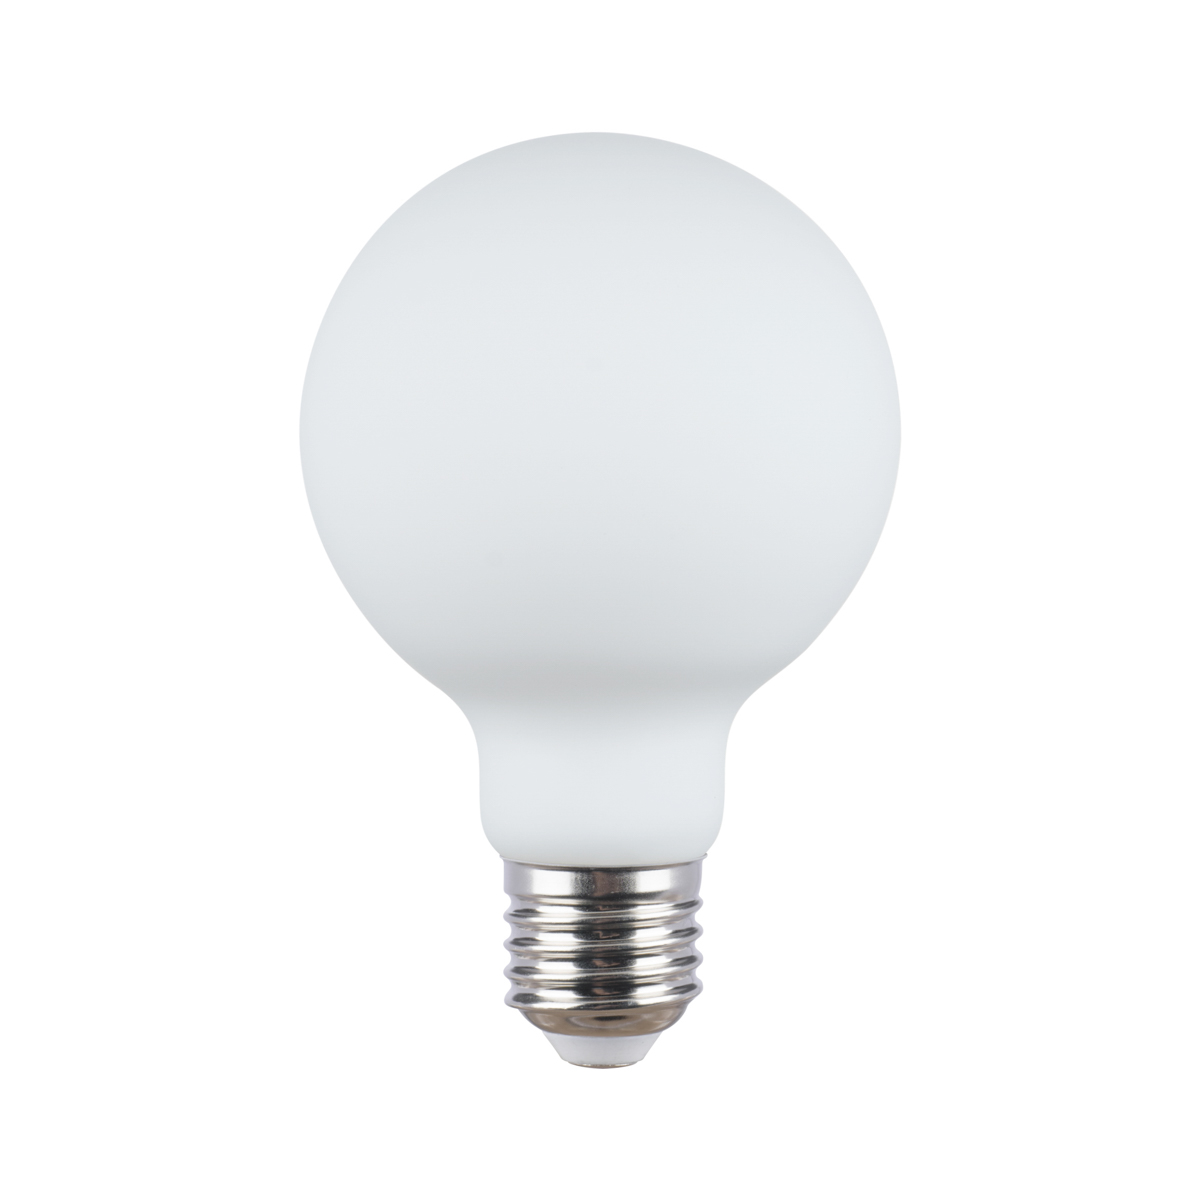 Ampoule à filament LED E27 transparente A60 2W 180 lm 2700K